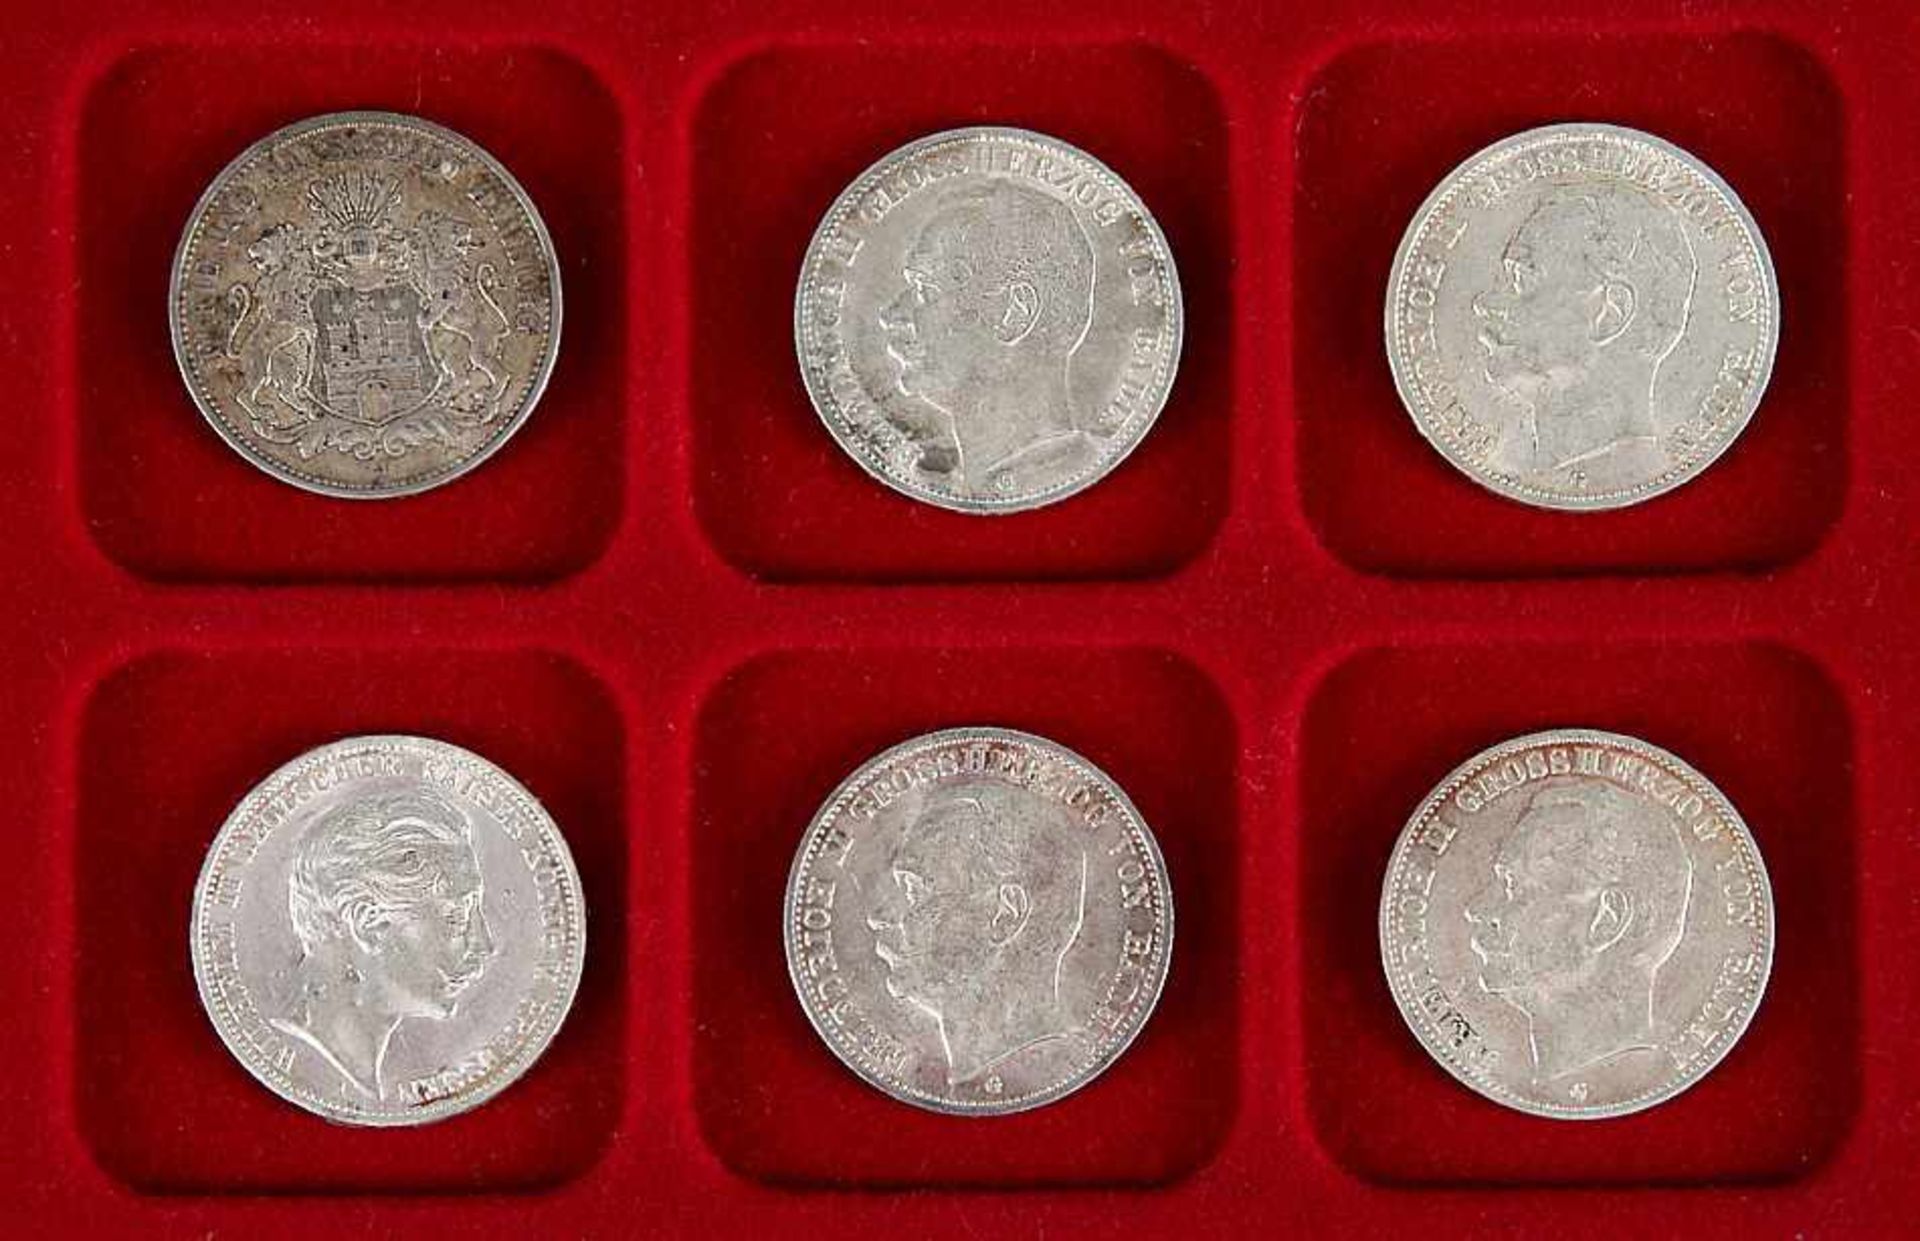 Sechs Silbermünzen3 Mark Deut. Reich 1912 A, 1912 G, 1910 J, 1910 G, 1914 G, 1911 G. Zus. 101 g.€